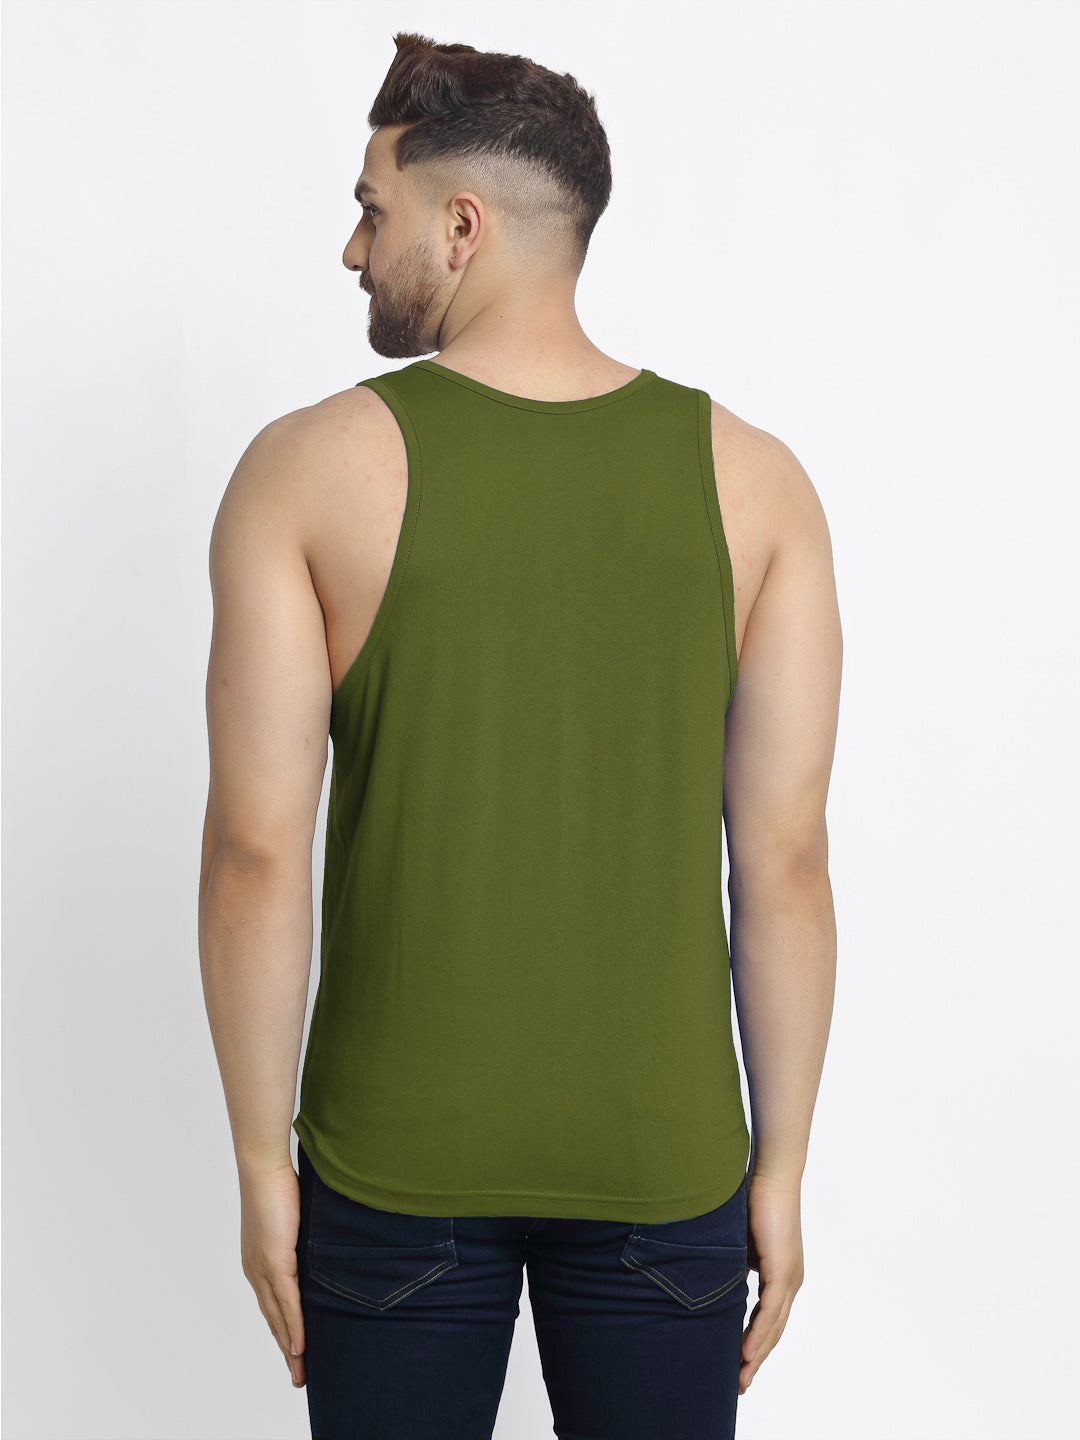 Men's Pack of 2 Navy & Olive Green Printed Gym Vest - Friskers